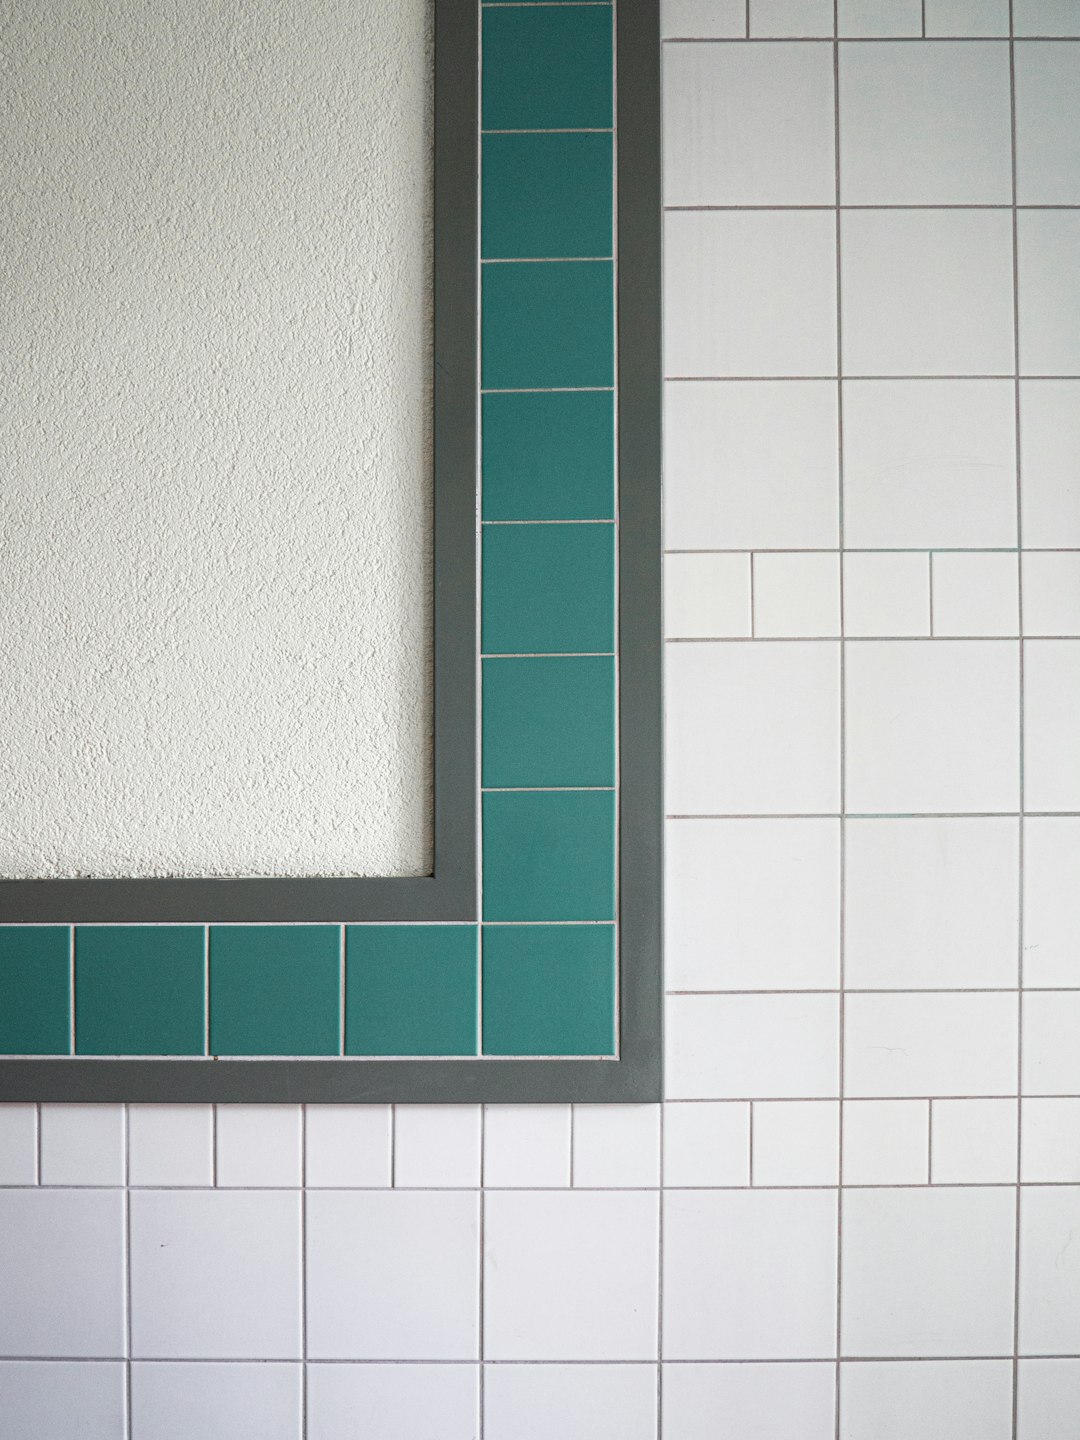 green wooden frame on white ceramic tiles